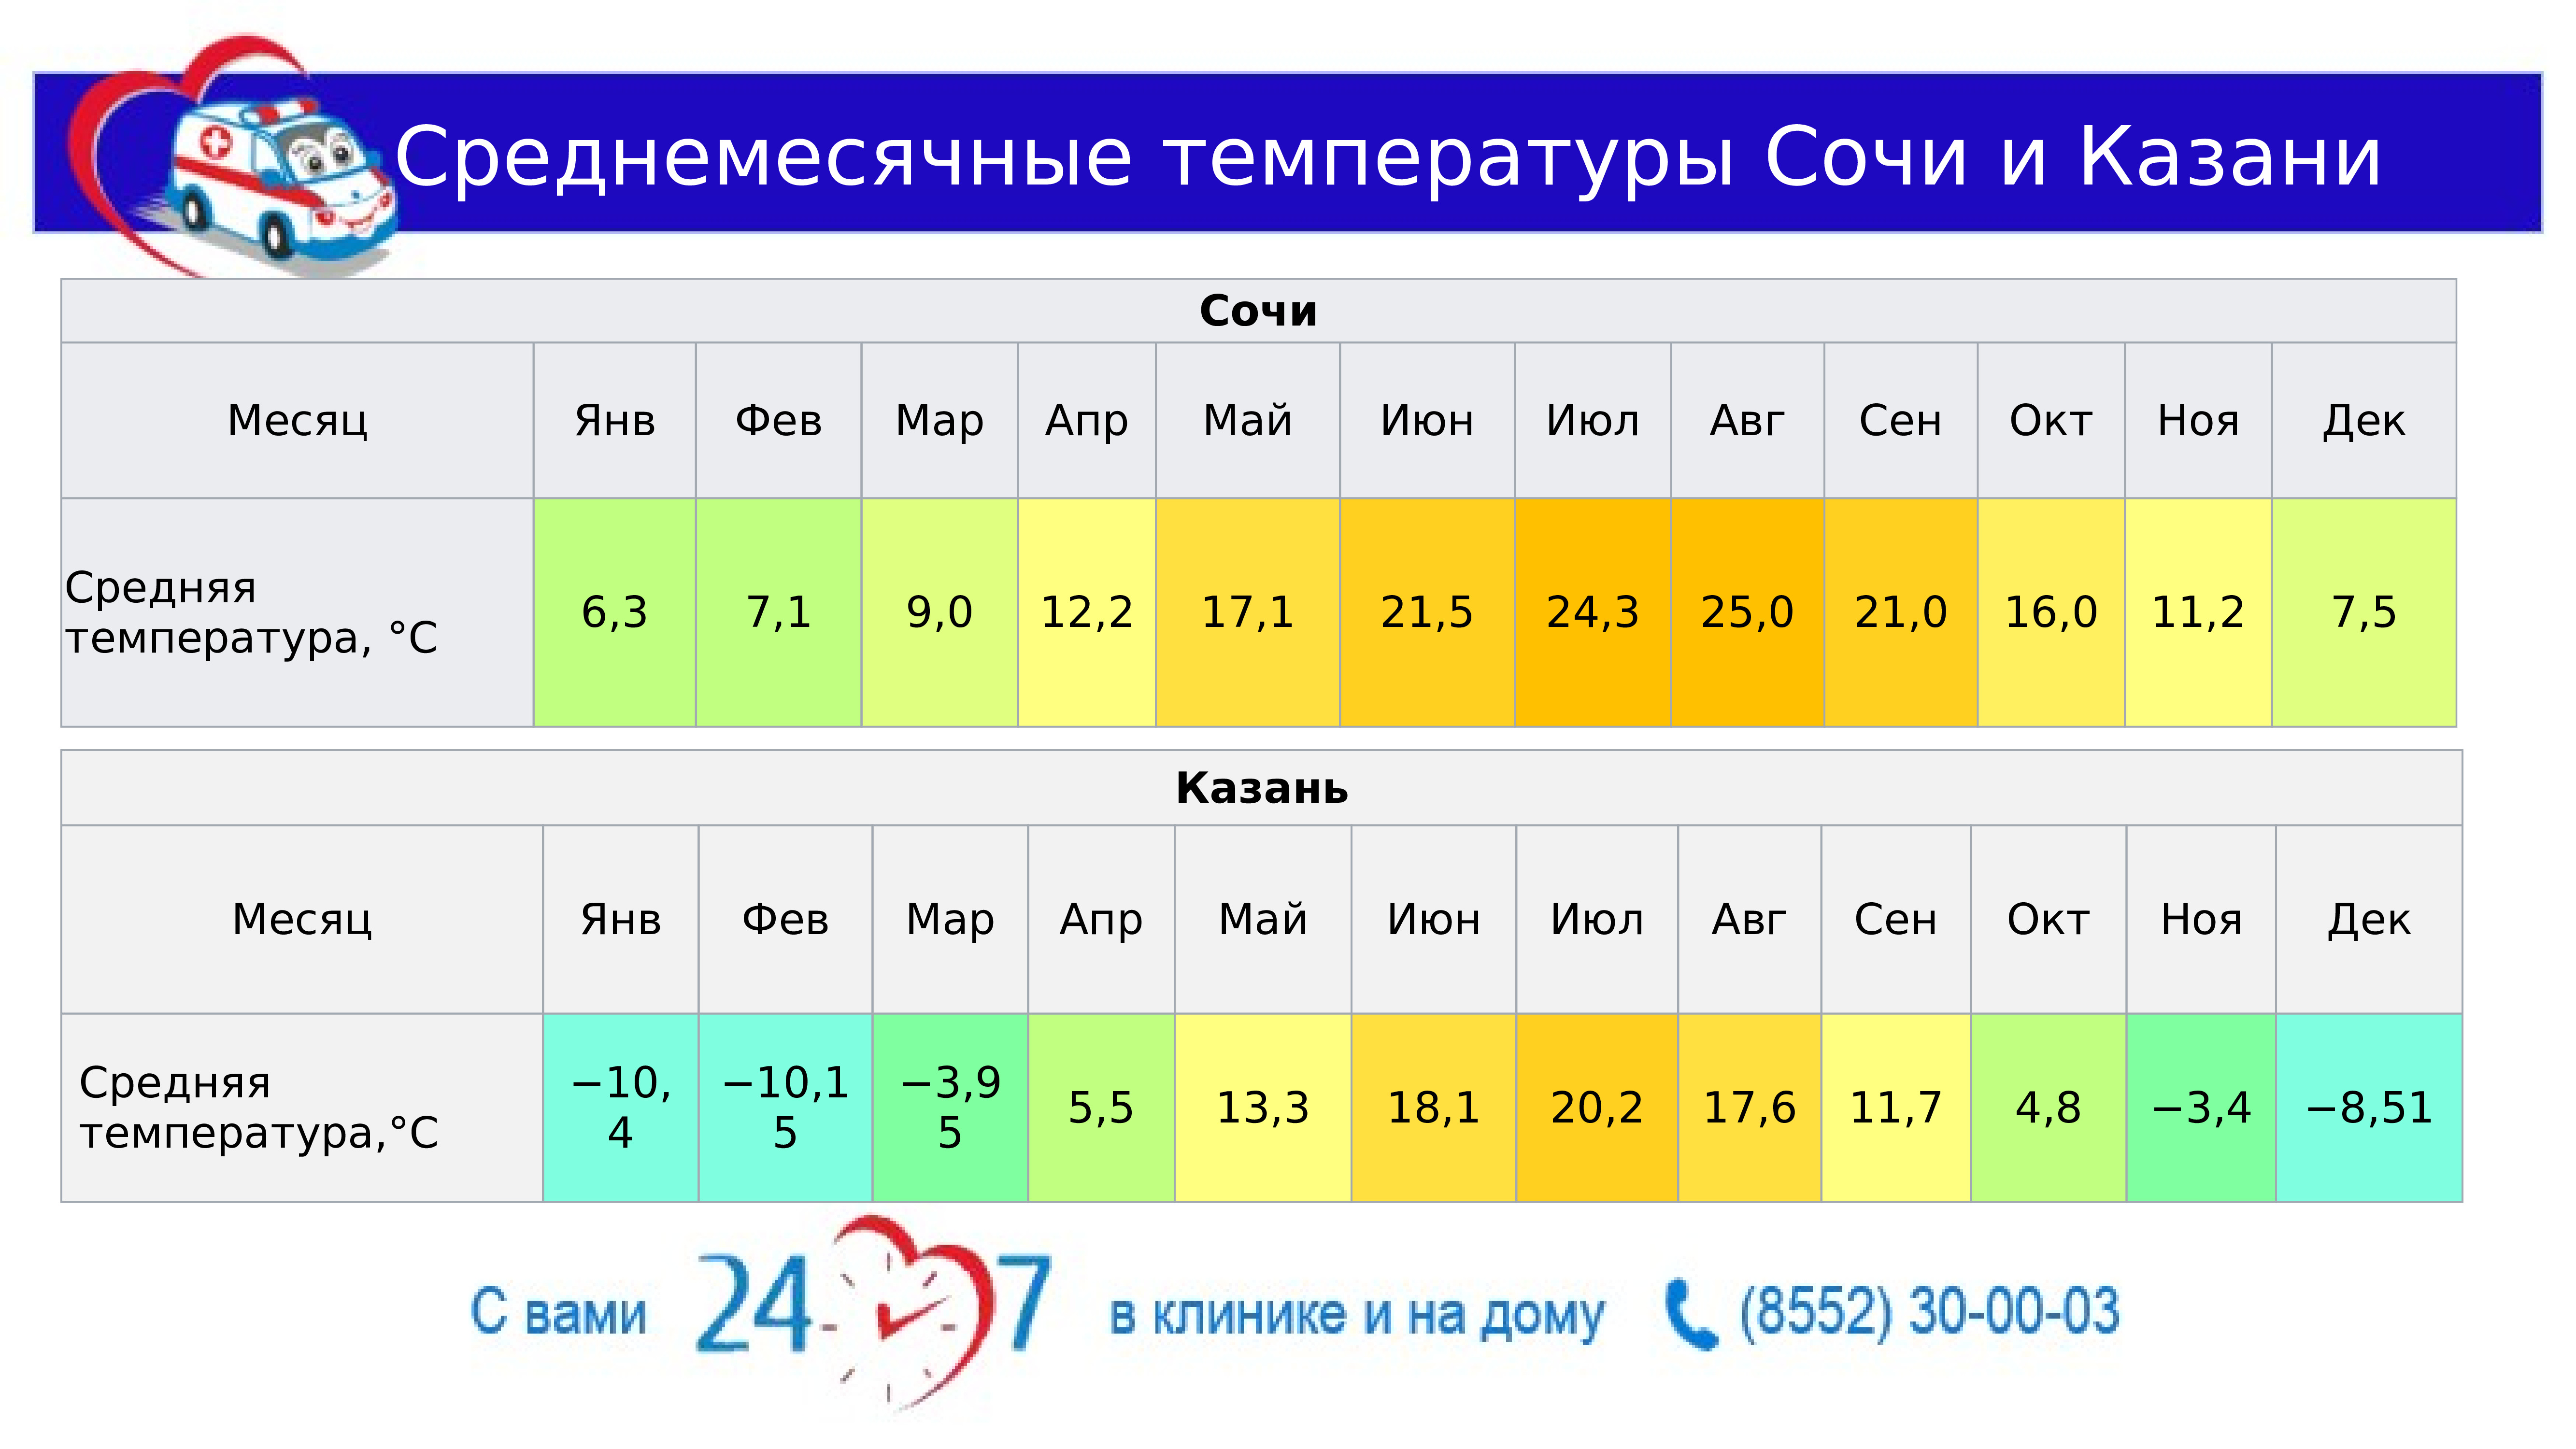 Температура в энгельсе. Средняя температура в Сочи. Средняя температура в Казани. Средняя температура в Сочи по месяцам. Средняя температура в Казани по месяцам.